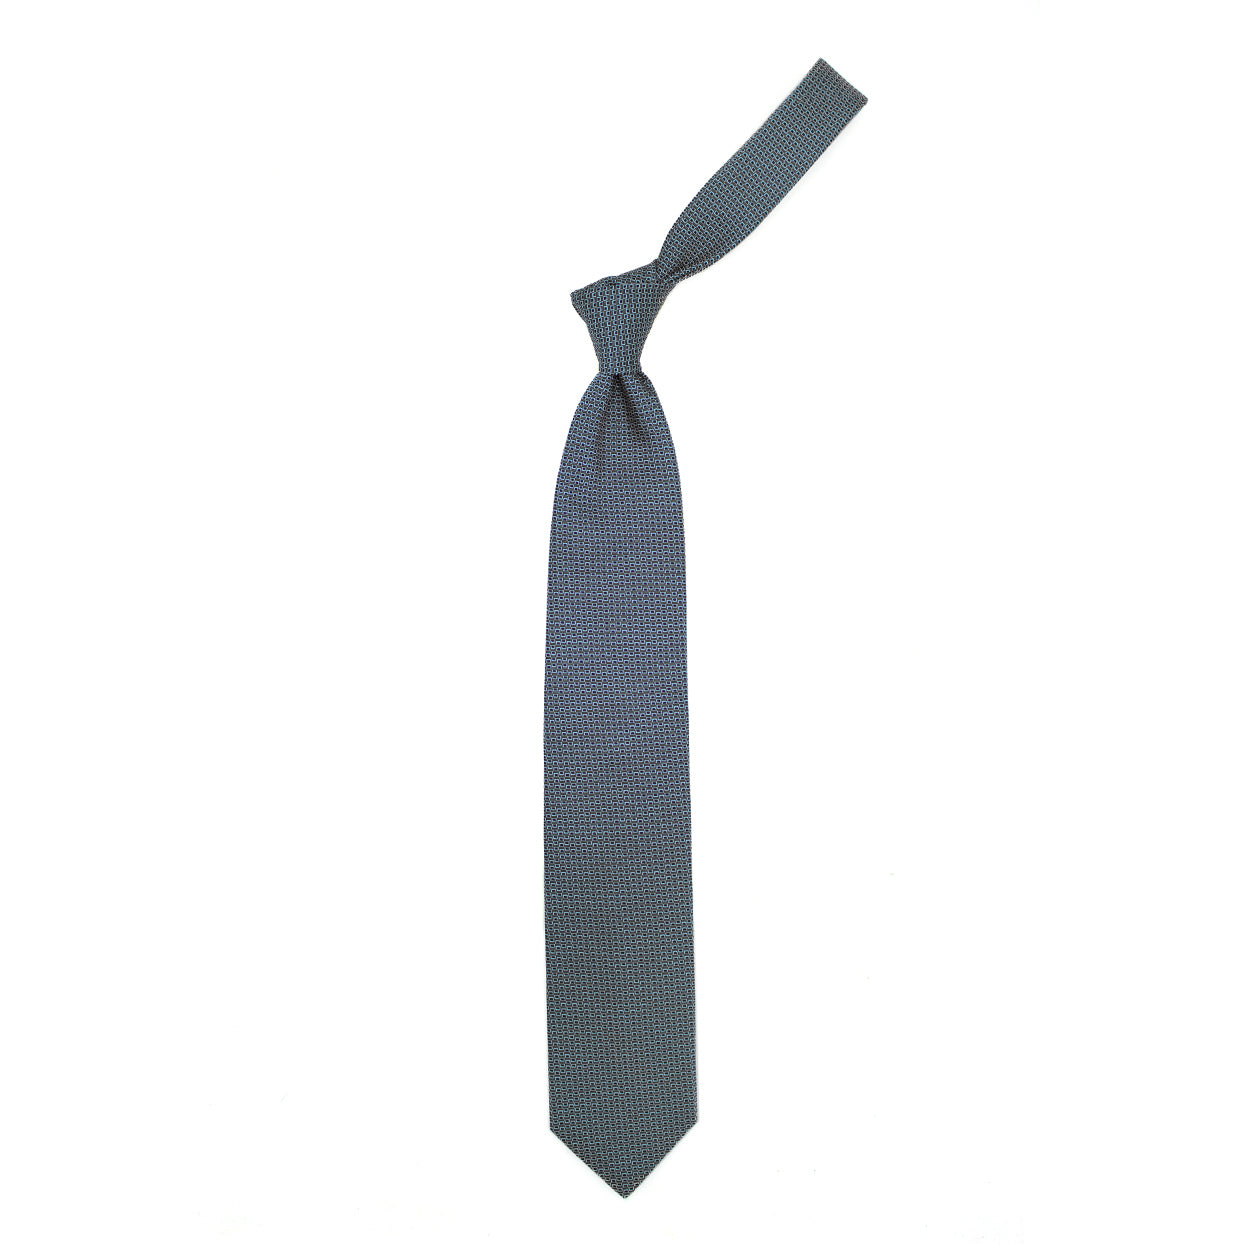 Cravatta con pattern geometrico grigio, azzurro e blu